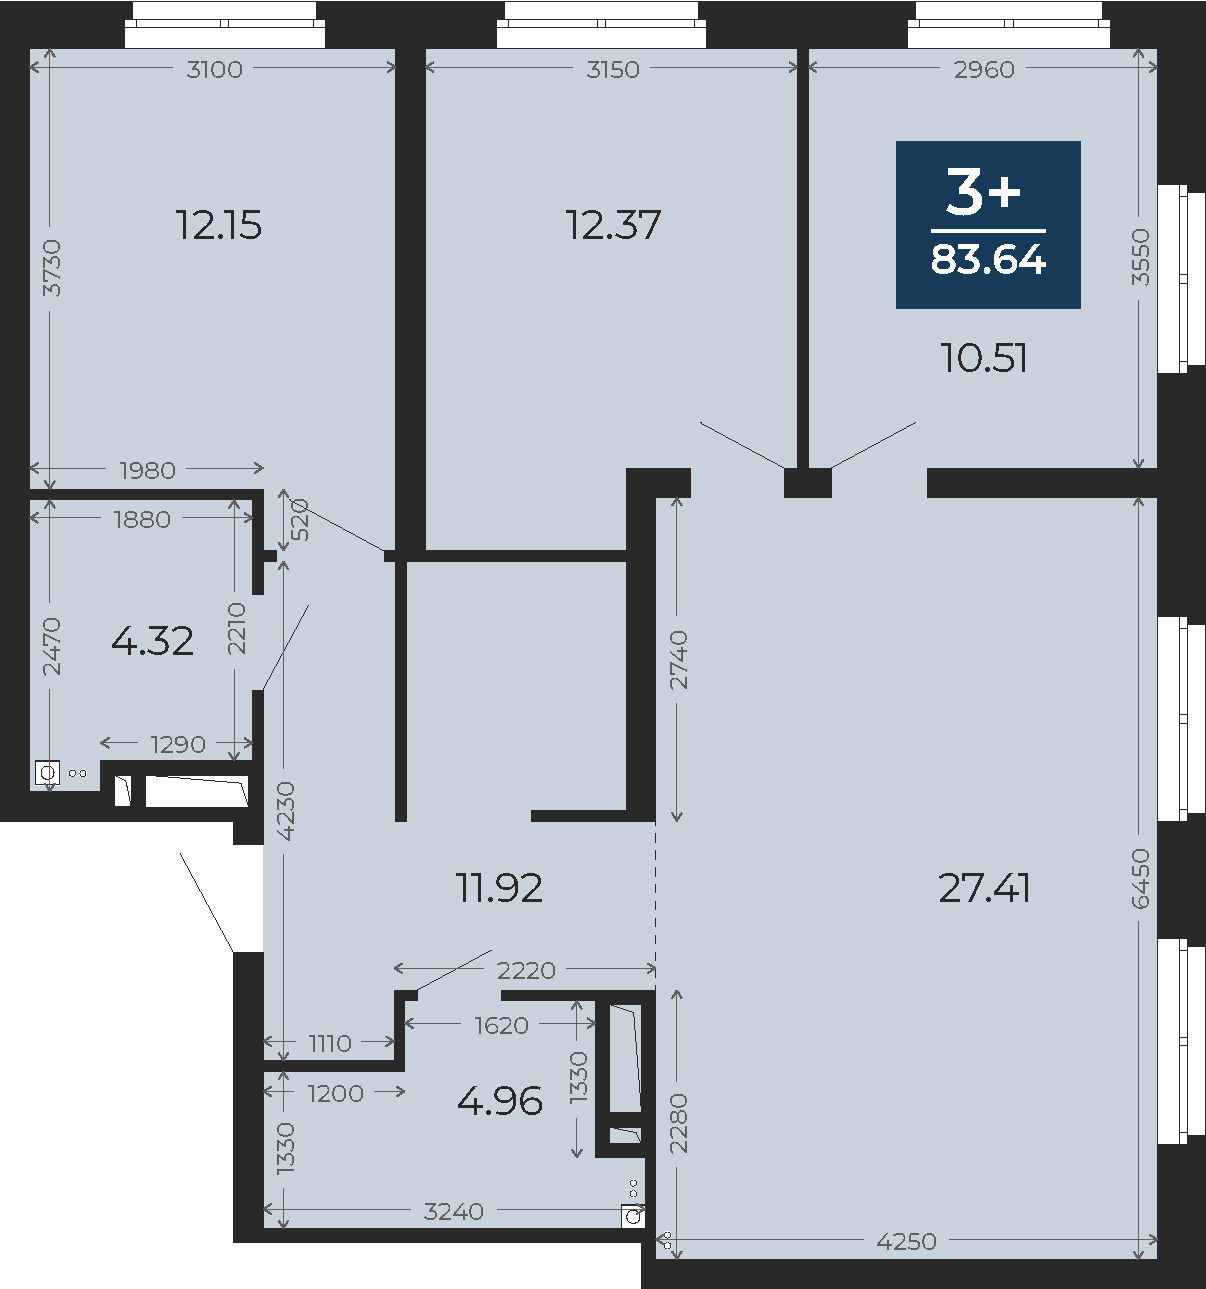 Квартира № 287, 3-комнатная, 83.64 кв. м, 22 этаж